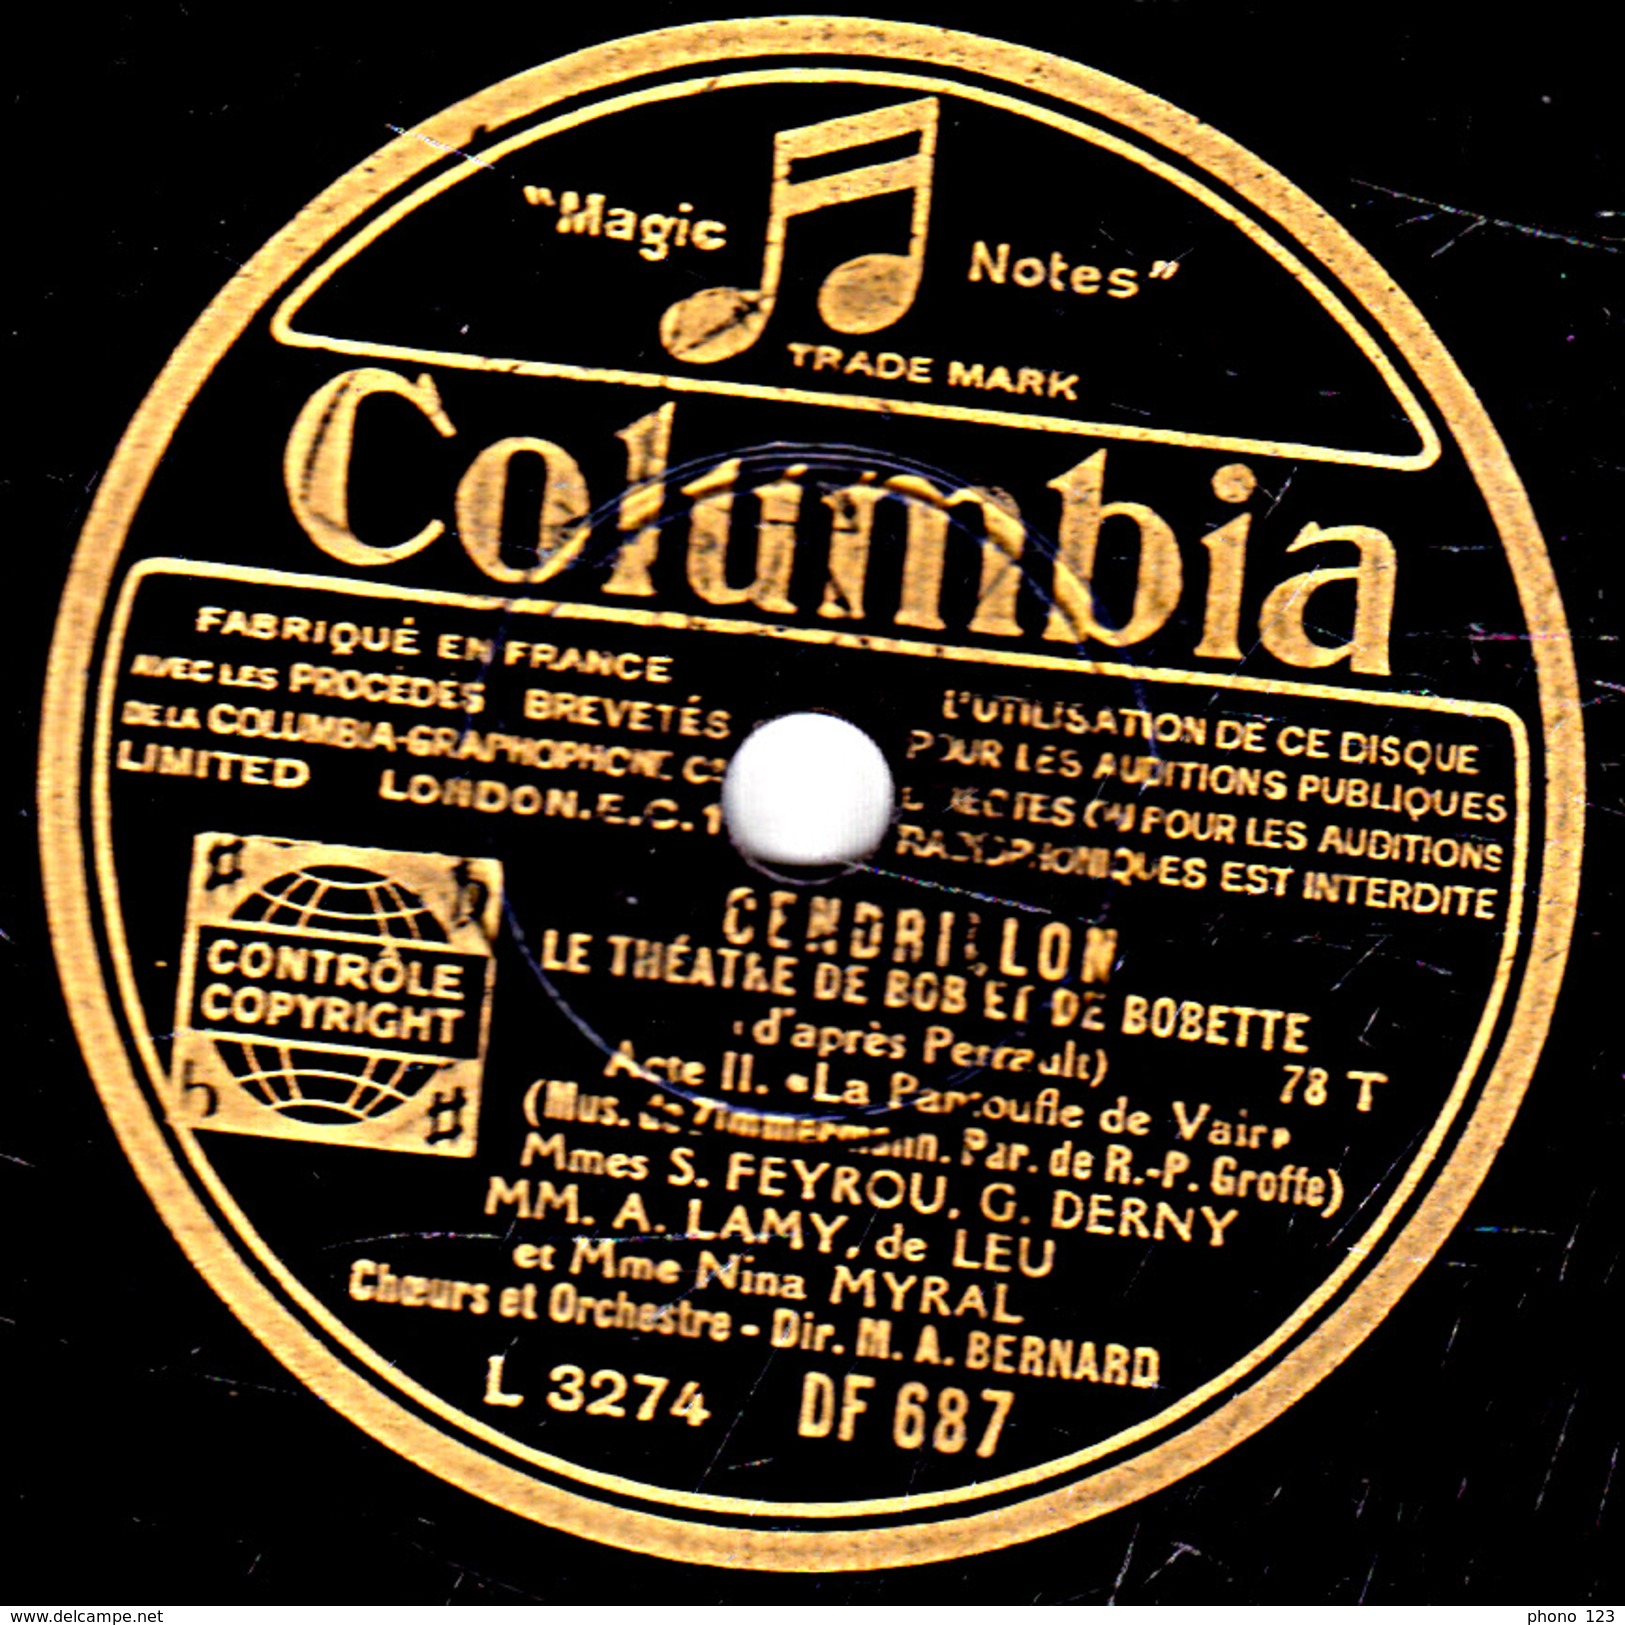 78 T. - 25 Cm - état B -  LE THEATRE DE BOB ET BOBETTE - CENDRILLON - 78 T - Disques Pour Gramophone